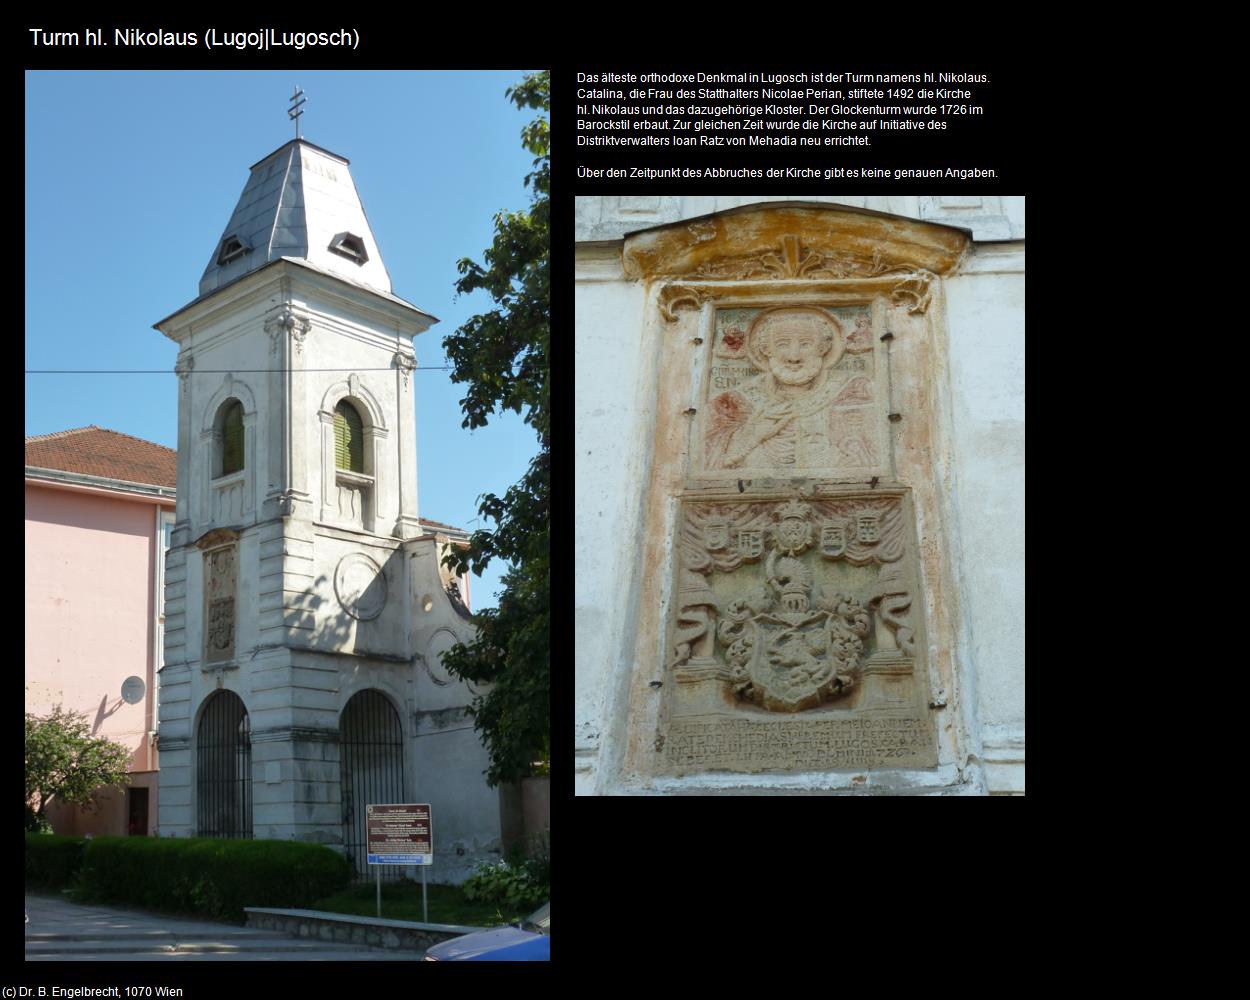 Turm hl. Nikolaus  (Lugoj|Lugosch) in RUMÄNIEN